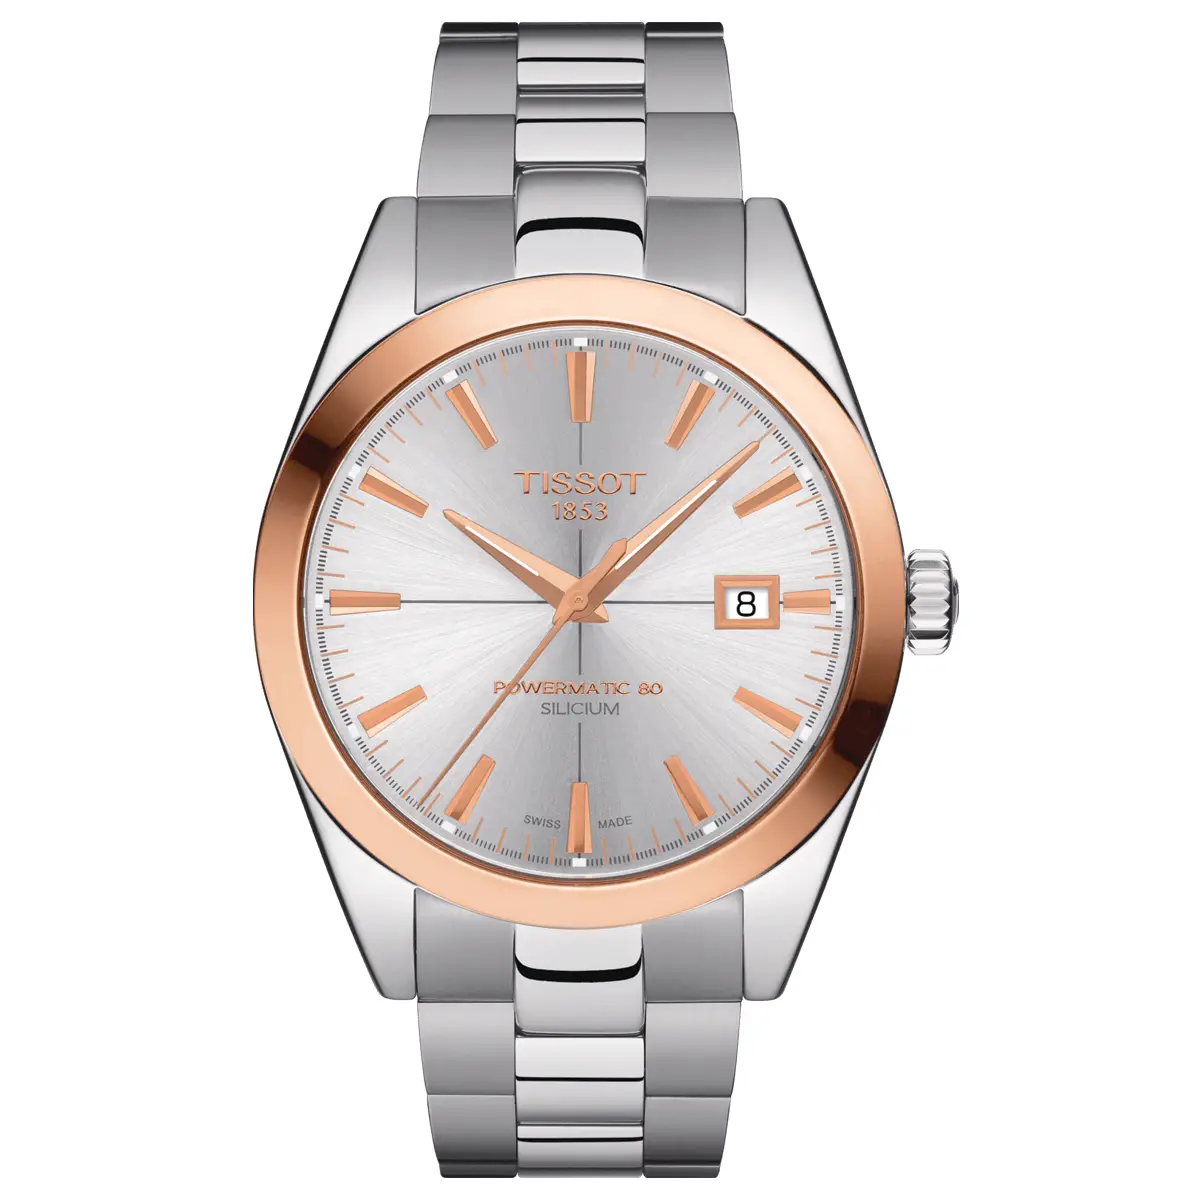 Đồng hồ Tissot Gentleman Powermatic 80 Silicium 18kt T927.407.41.031.00 mặt số màu bạc. Dây đeo bằng thép. Thân vỏ bằng thép.